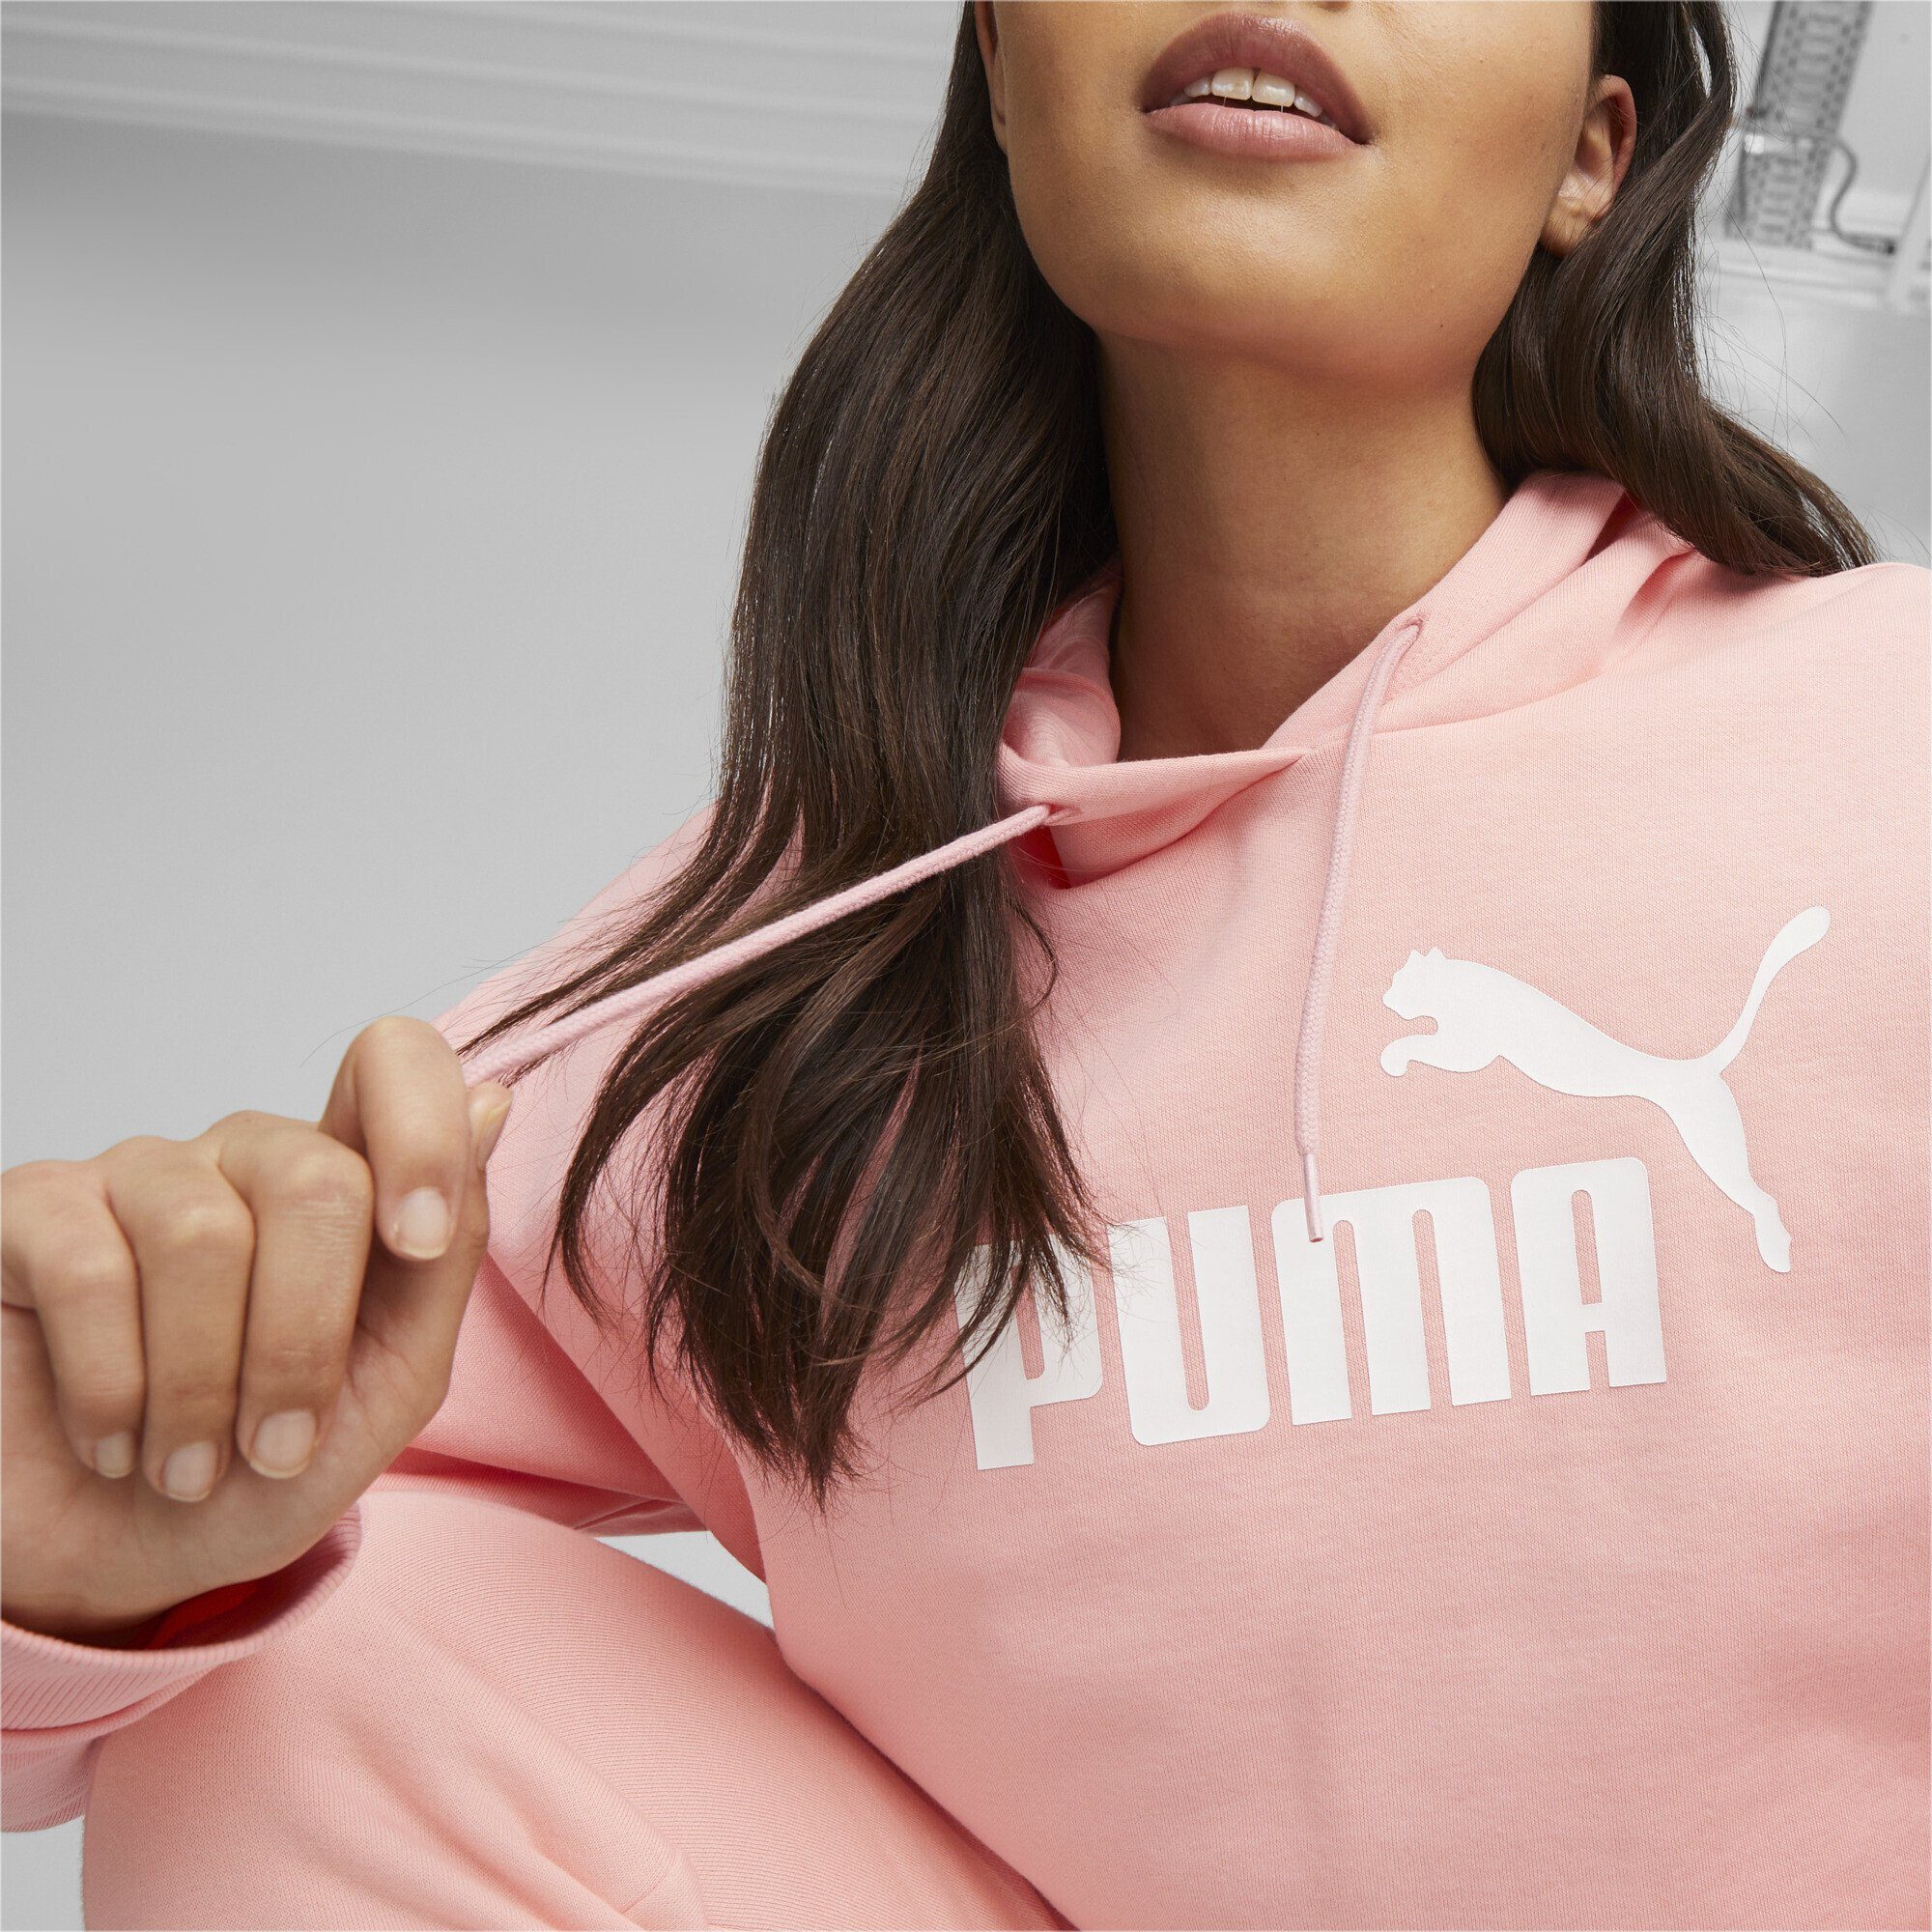 Logo Hoodie Essentials+ Sweatshirt Peach Damen Pink Smoothie Cropped PUMA